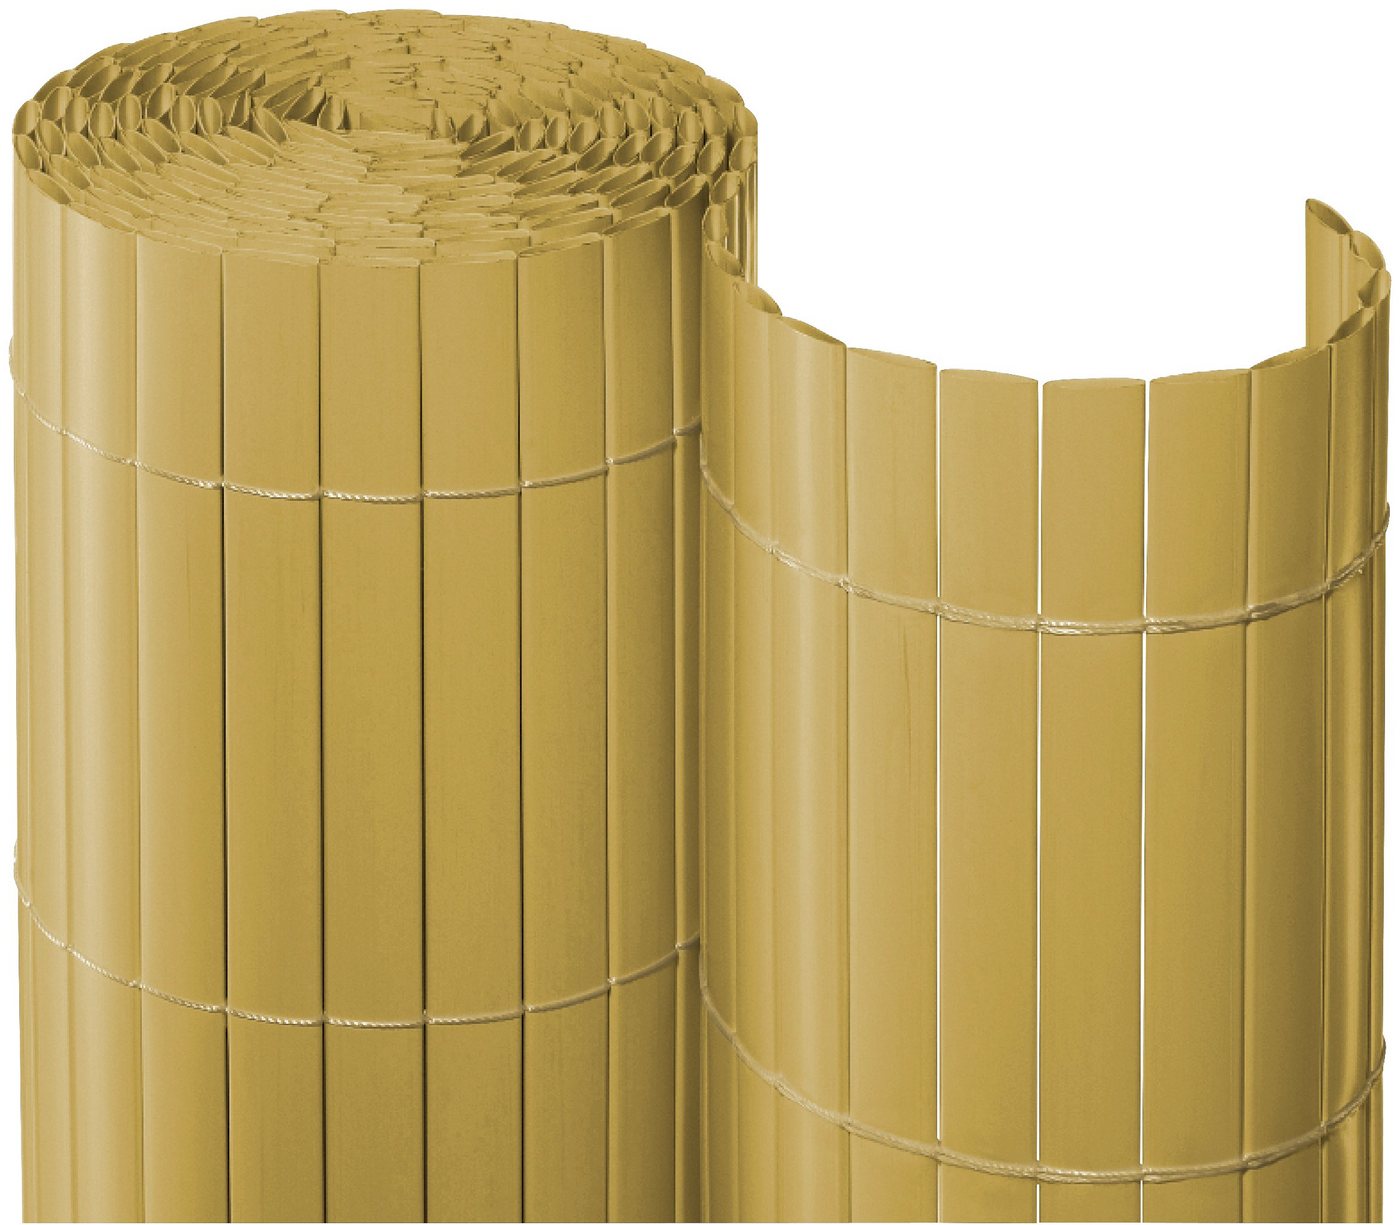 NOOR Balkonsichtschutz BxH: 300×90 cm, bambusfarben beige|braun Rabatt: 11 %